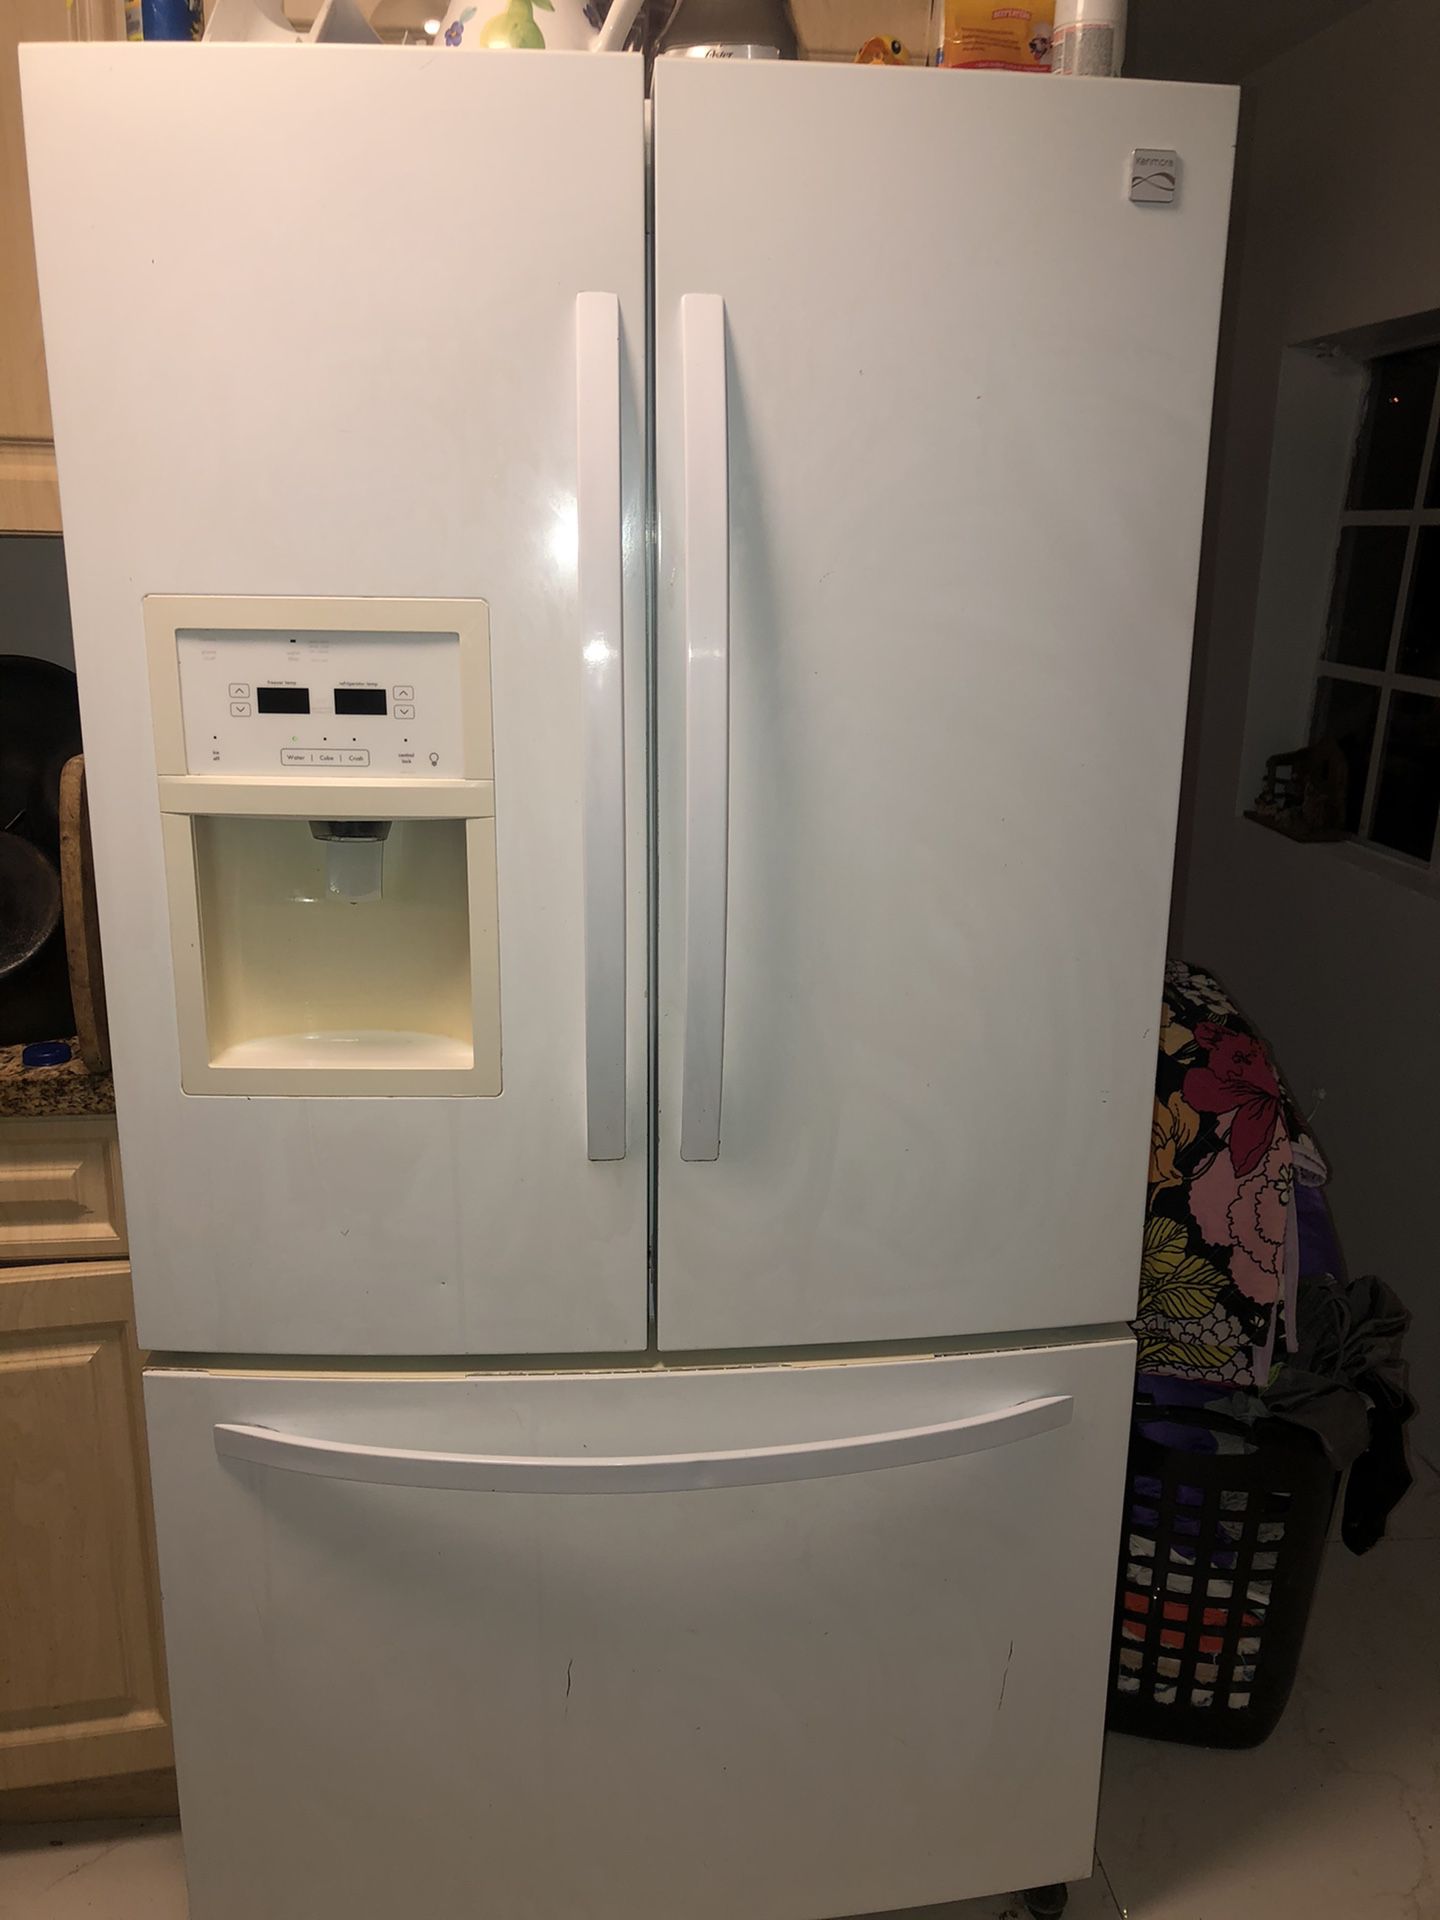 Refrigerator Grande Color Blanco